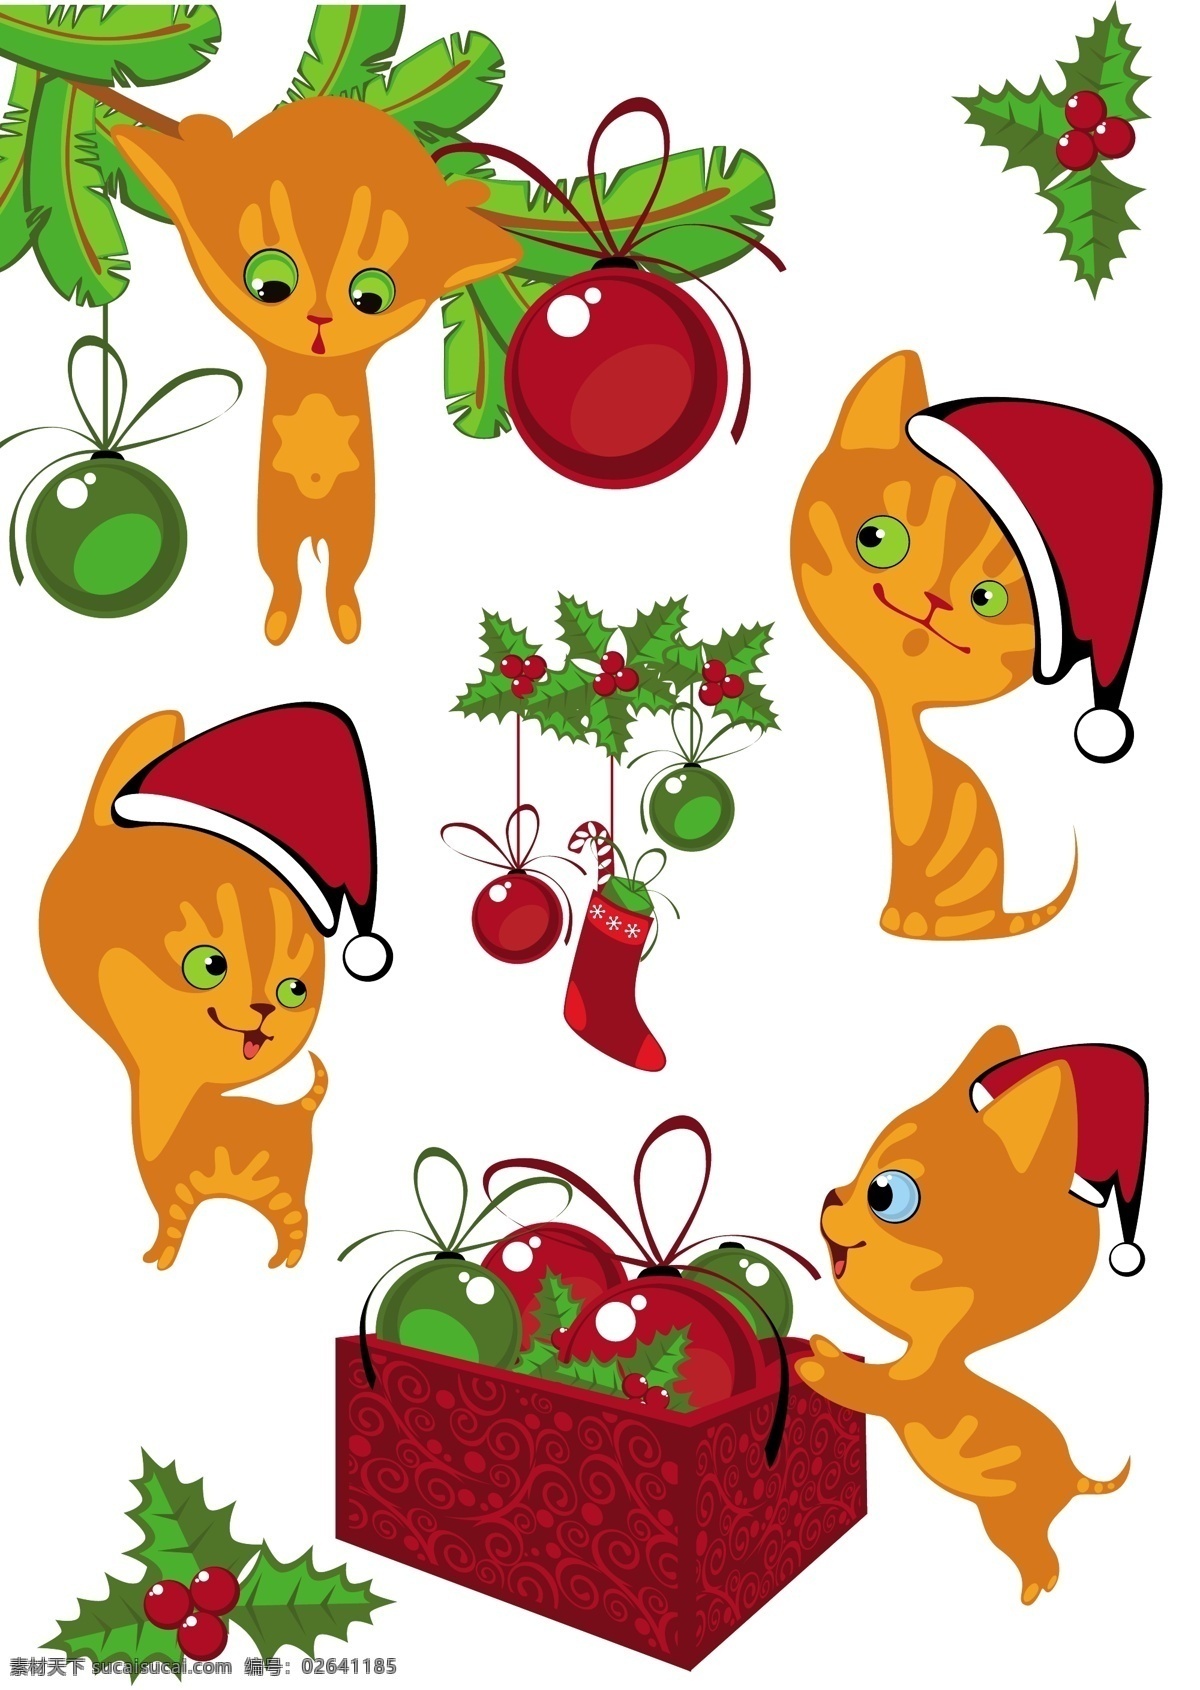 卡通 圣诞 小 猫咪 矢量图 商业矢量 矢量卡通 矢量下载 网页矢量 其他矢量图